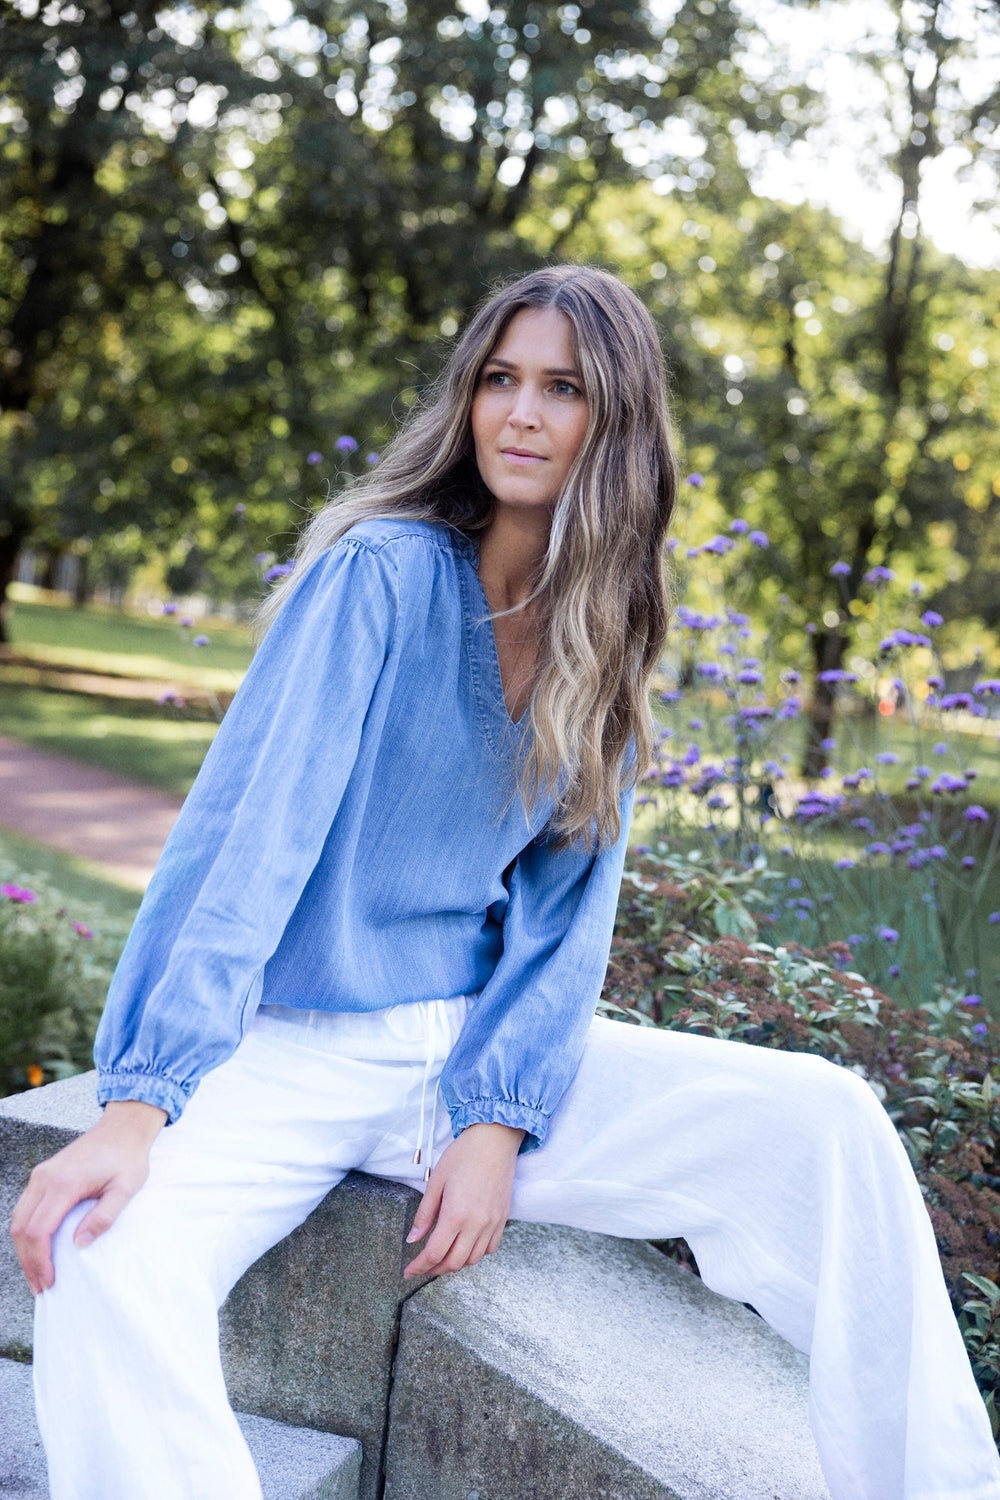 Provence Blouse Denim Blue | Skjorter og bluser | Smuk - Dameklær på nett